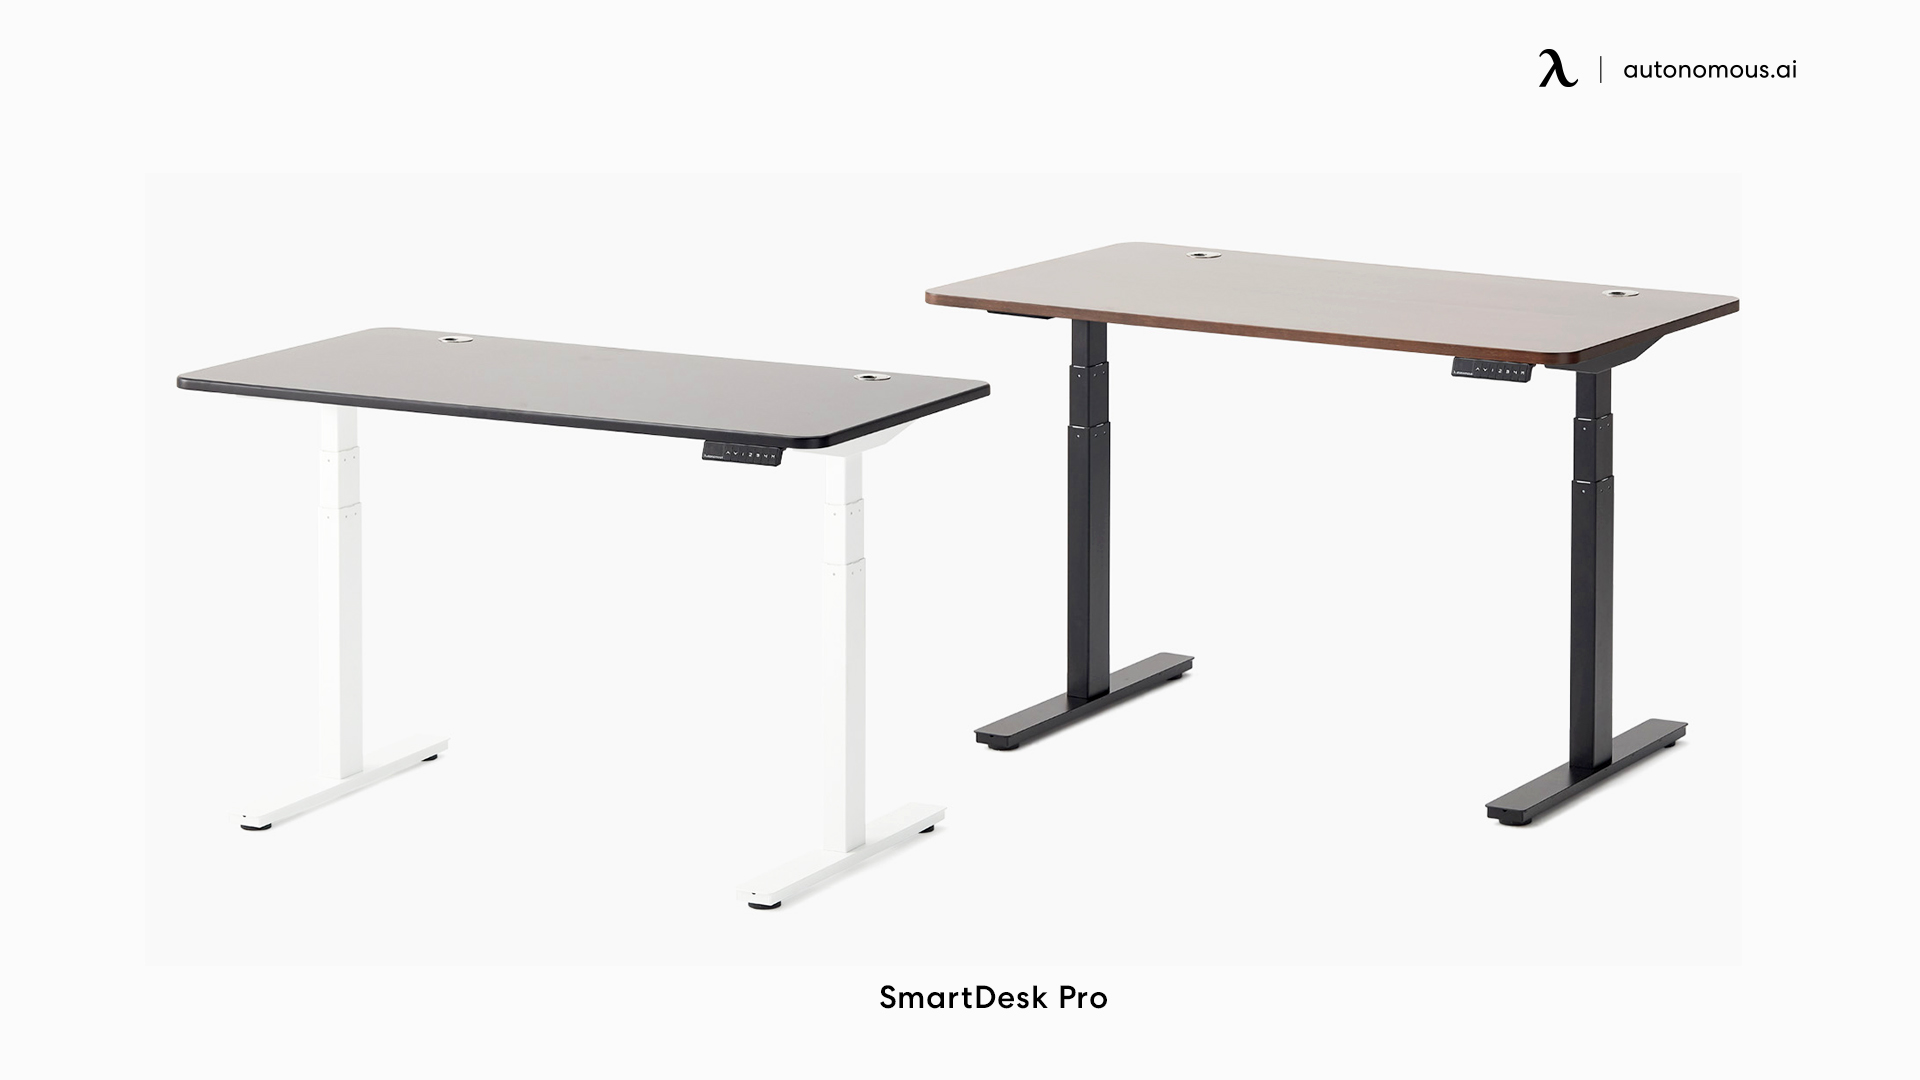 SmartDesk Pro home office desk ideas